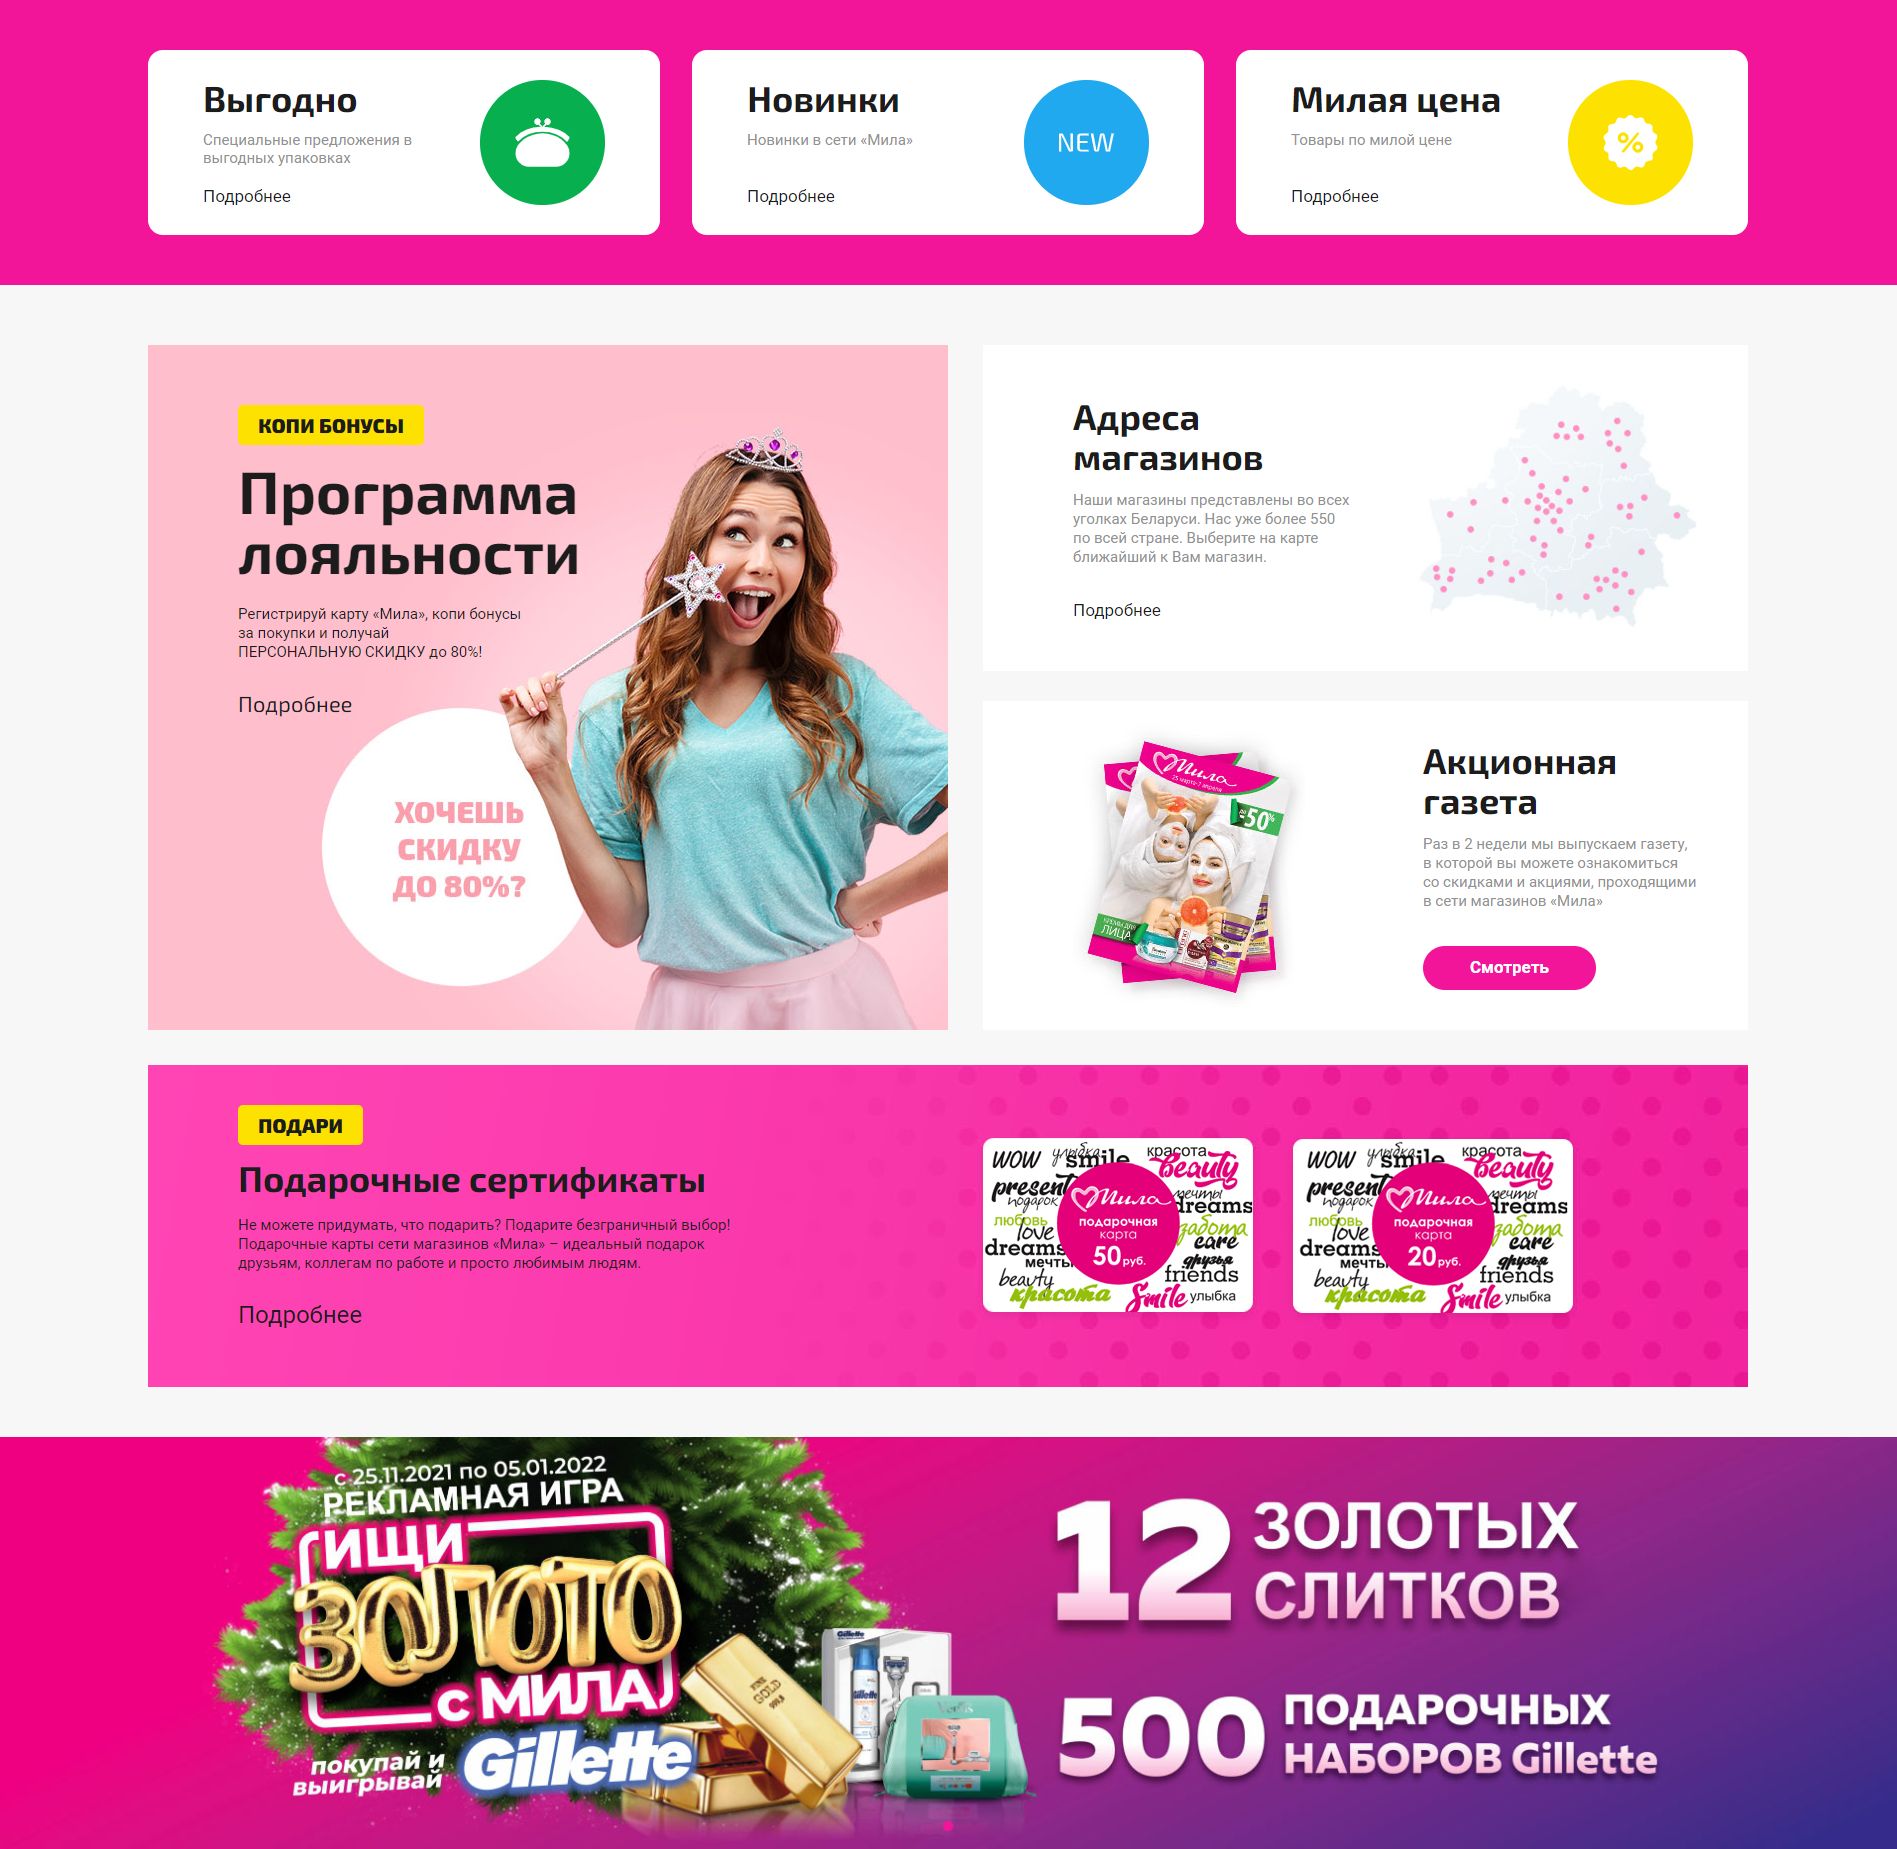 разработка нового сайта для интернет-магазина крупной розничной сети магазинов «мила» в беларуси - косметика, парфюмерия и бытовая химия.